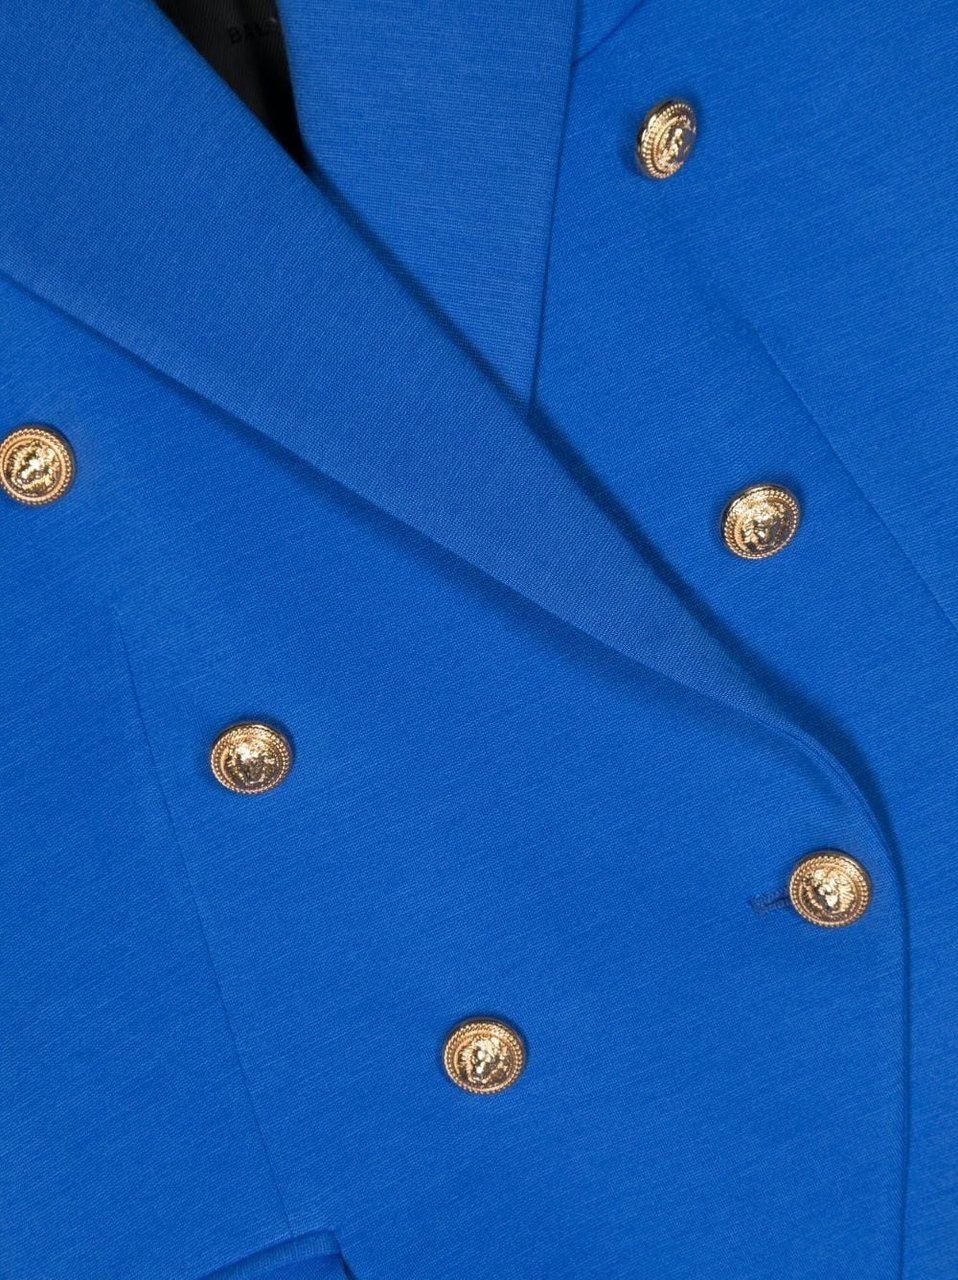 Balmain jacket blue Blauw